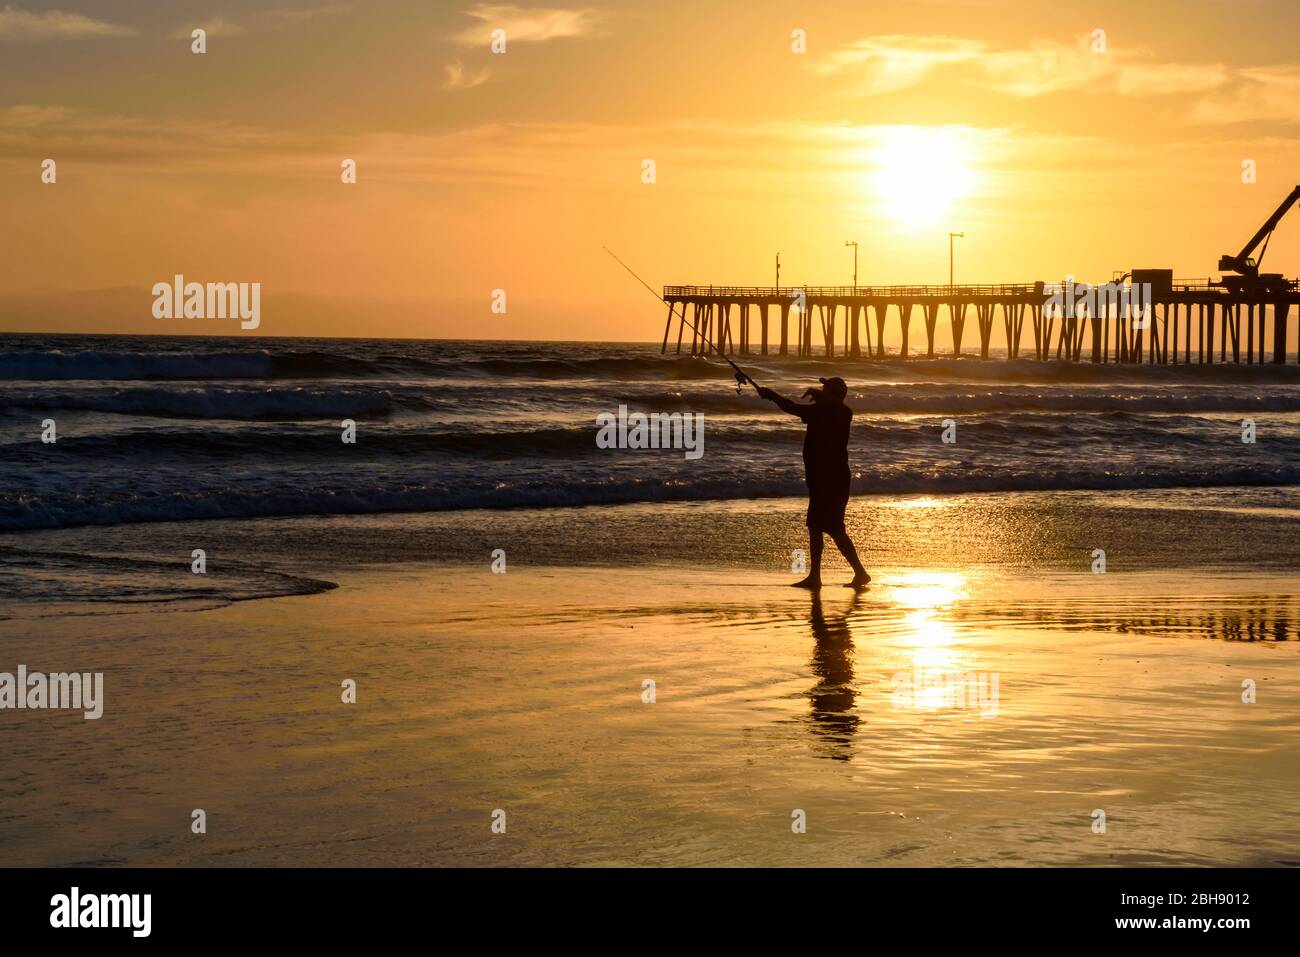 Angler am Strand von Santa Cruz an der Westküste Kaliforniens mit Pier im Hintergrund, Silhouette, Sonnenuntergang Foto Stock